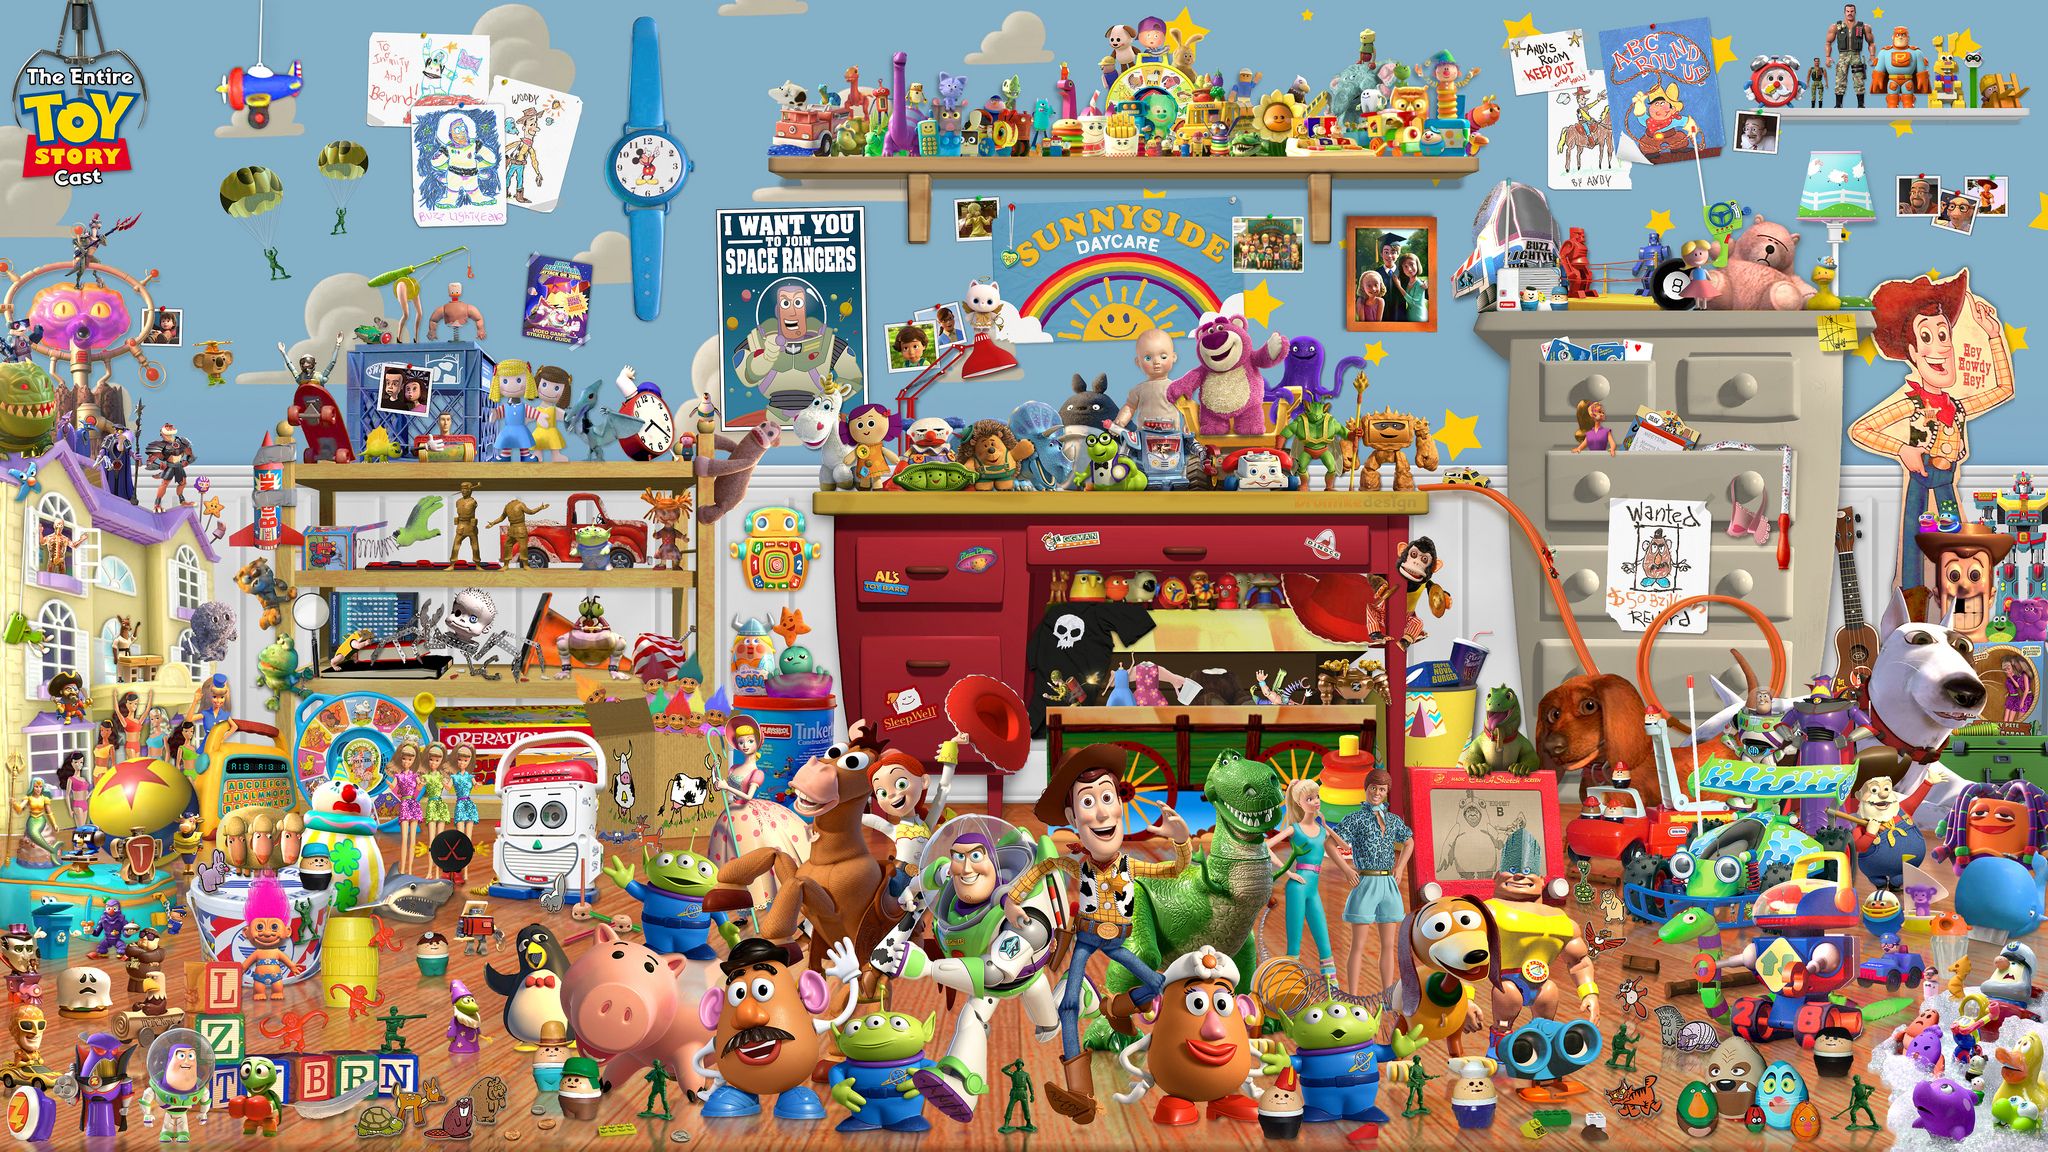 disney pixar characters wallpaper